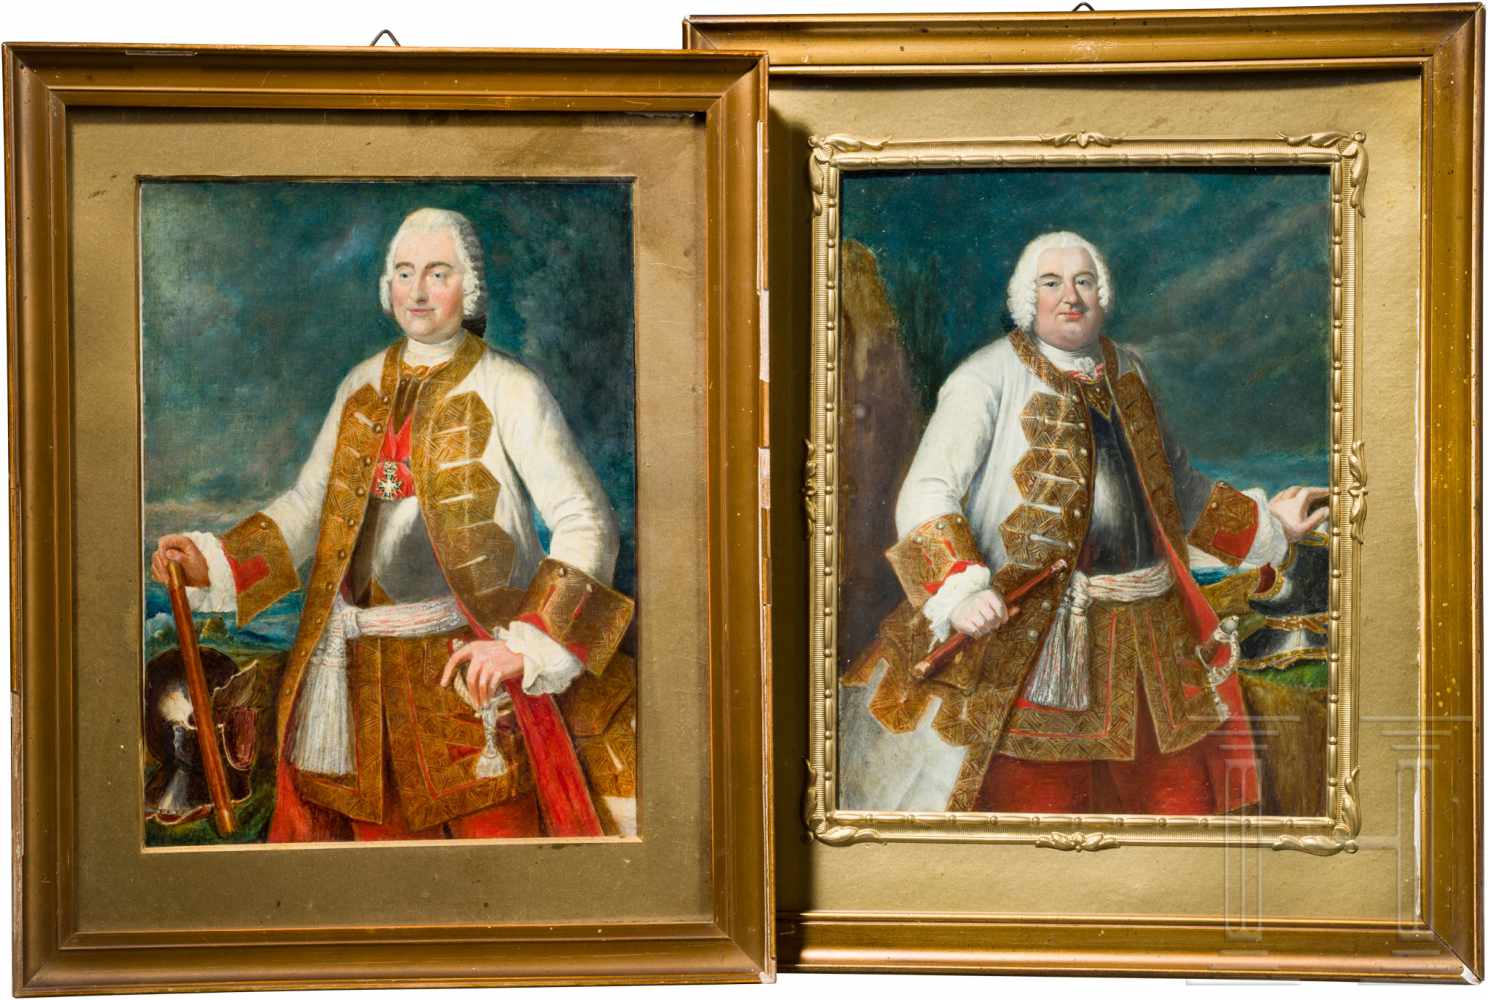 Offiziersfamilie von Pirch - Portraitgemälde zweier sächsischer Generale des 18. Jhdts.Öl auf